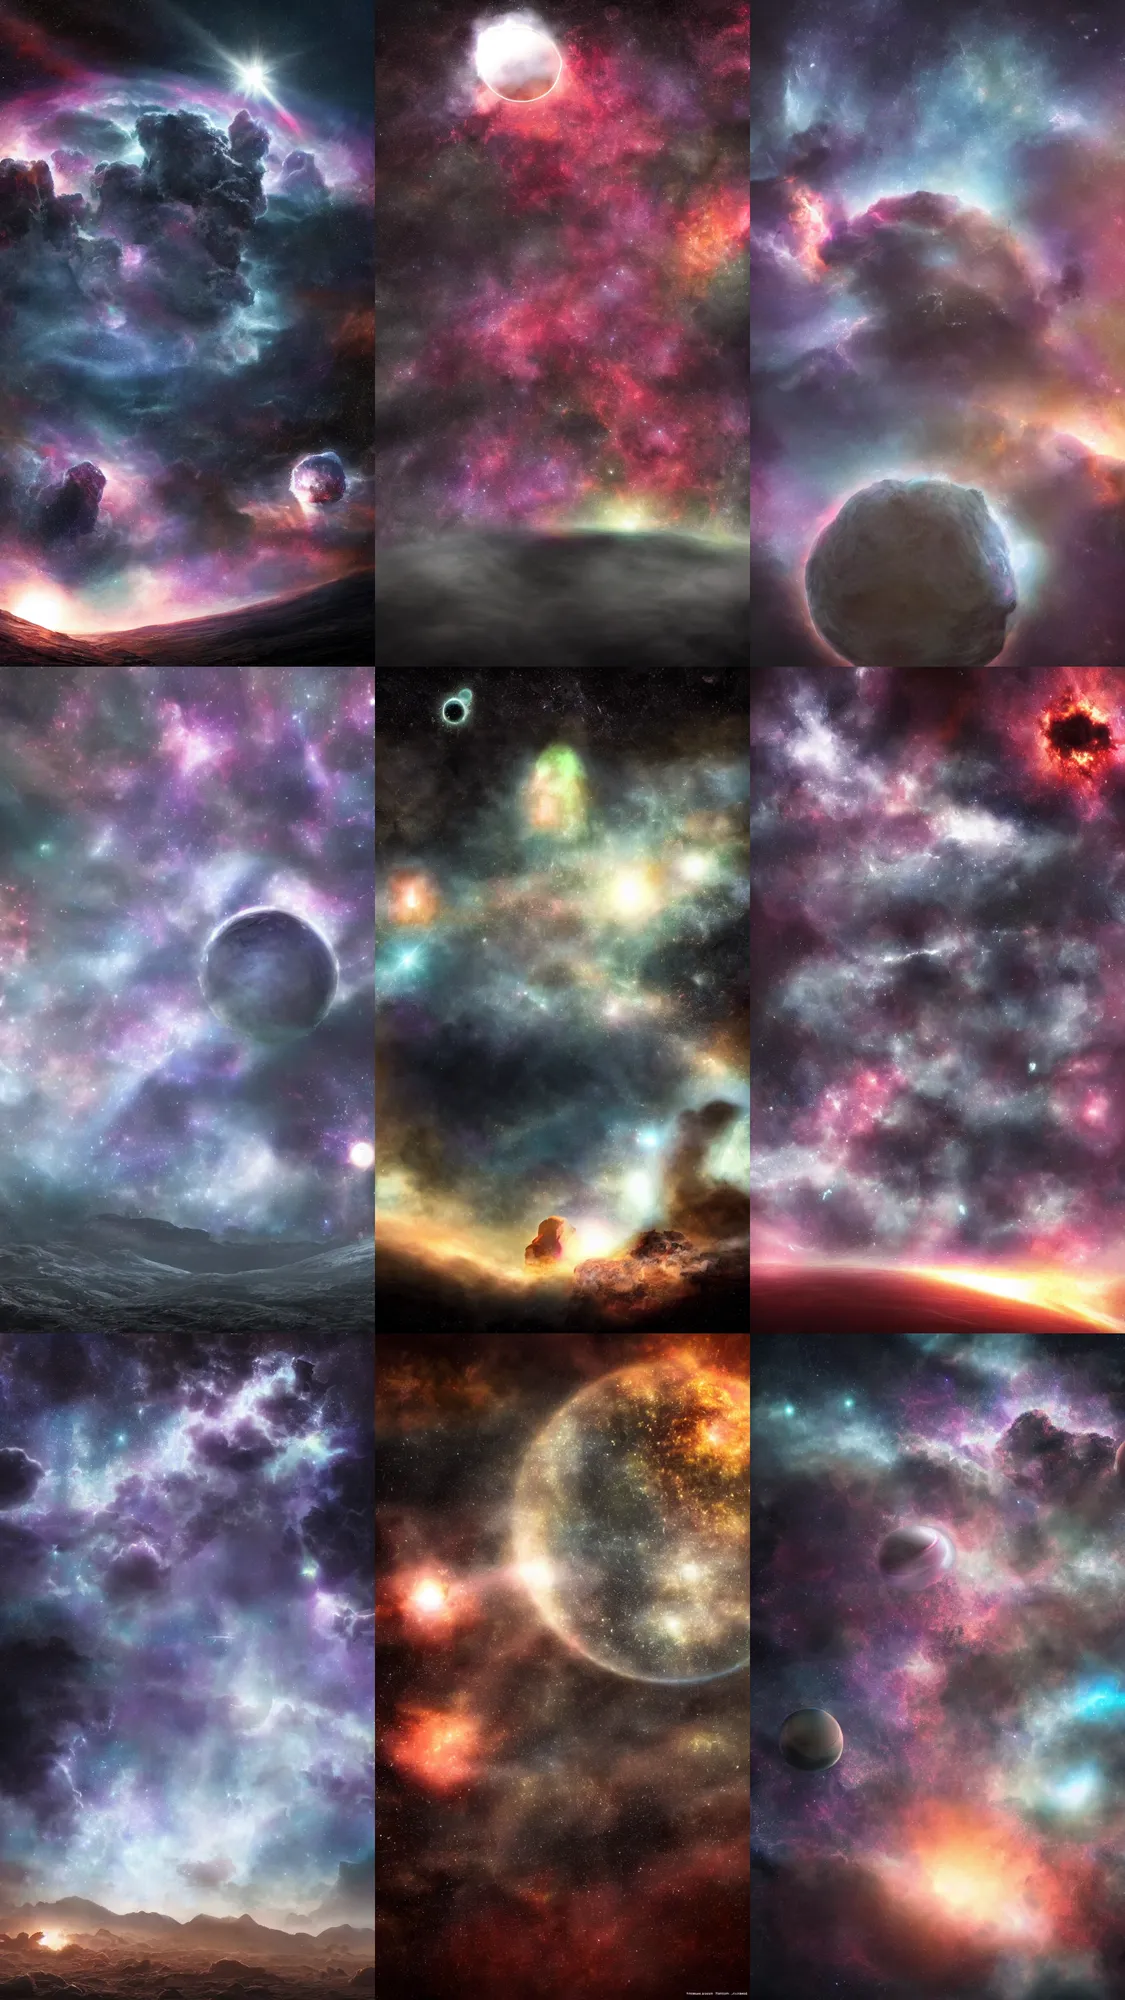 Prompt: alien planet, interstellar nebulae sky, hyperrealism, ambient lighting, atmospheric